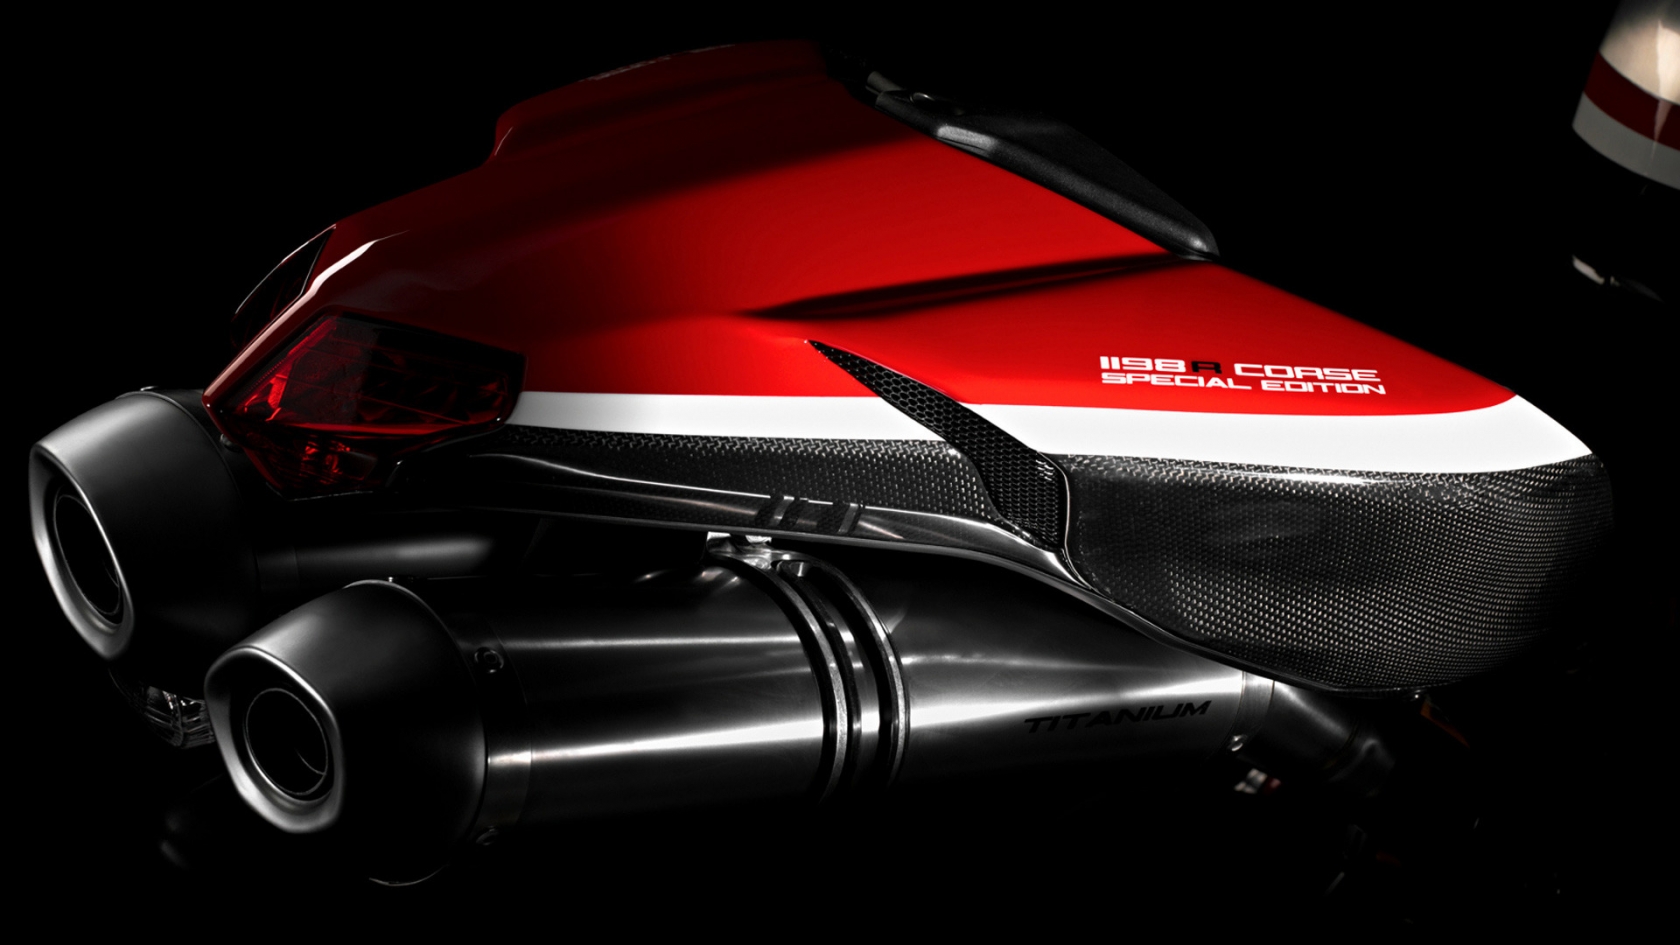 Ducati Superbike-1198-R-Corse Rear for 1680 x 945 HDTV resolution